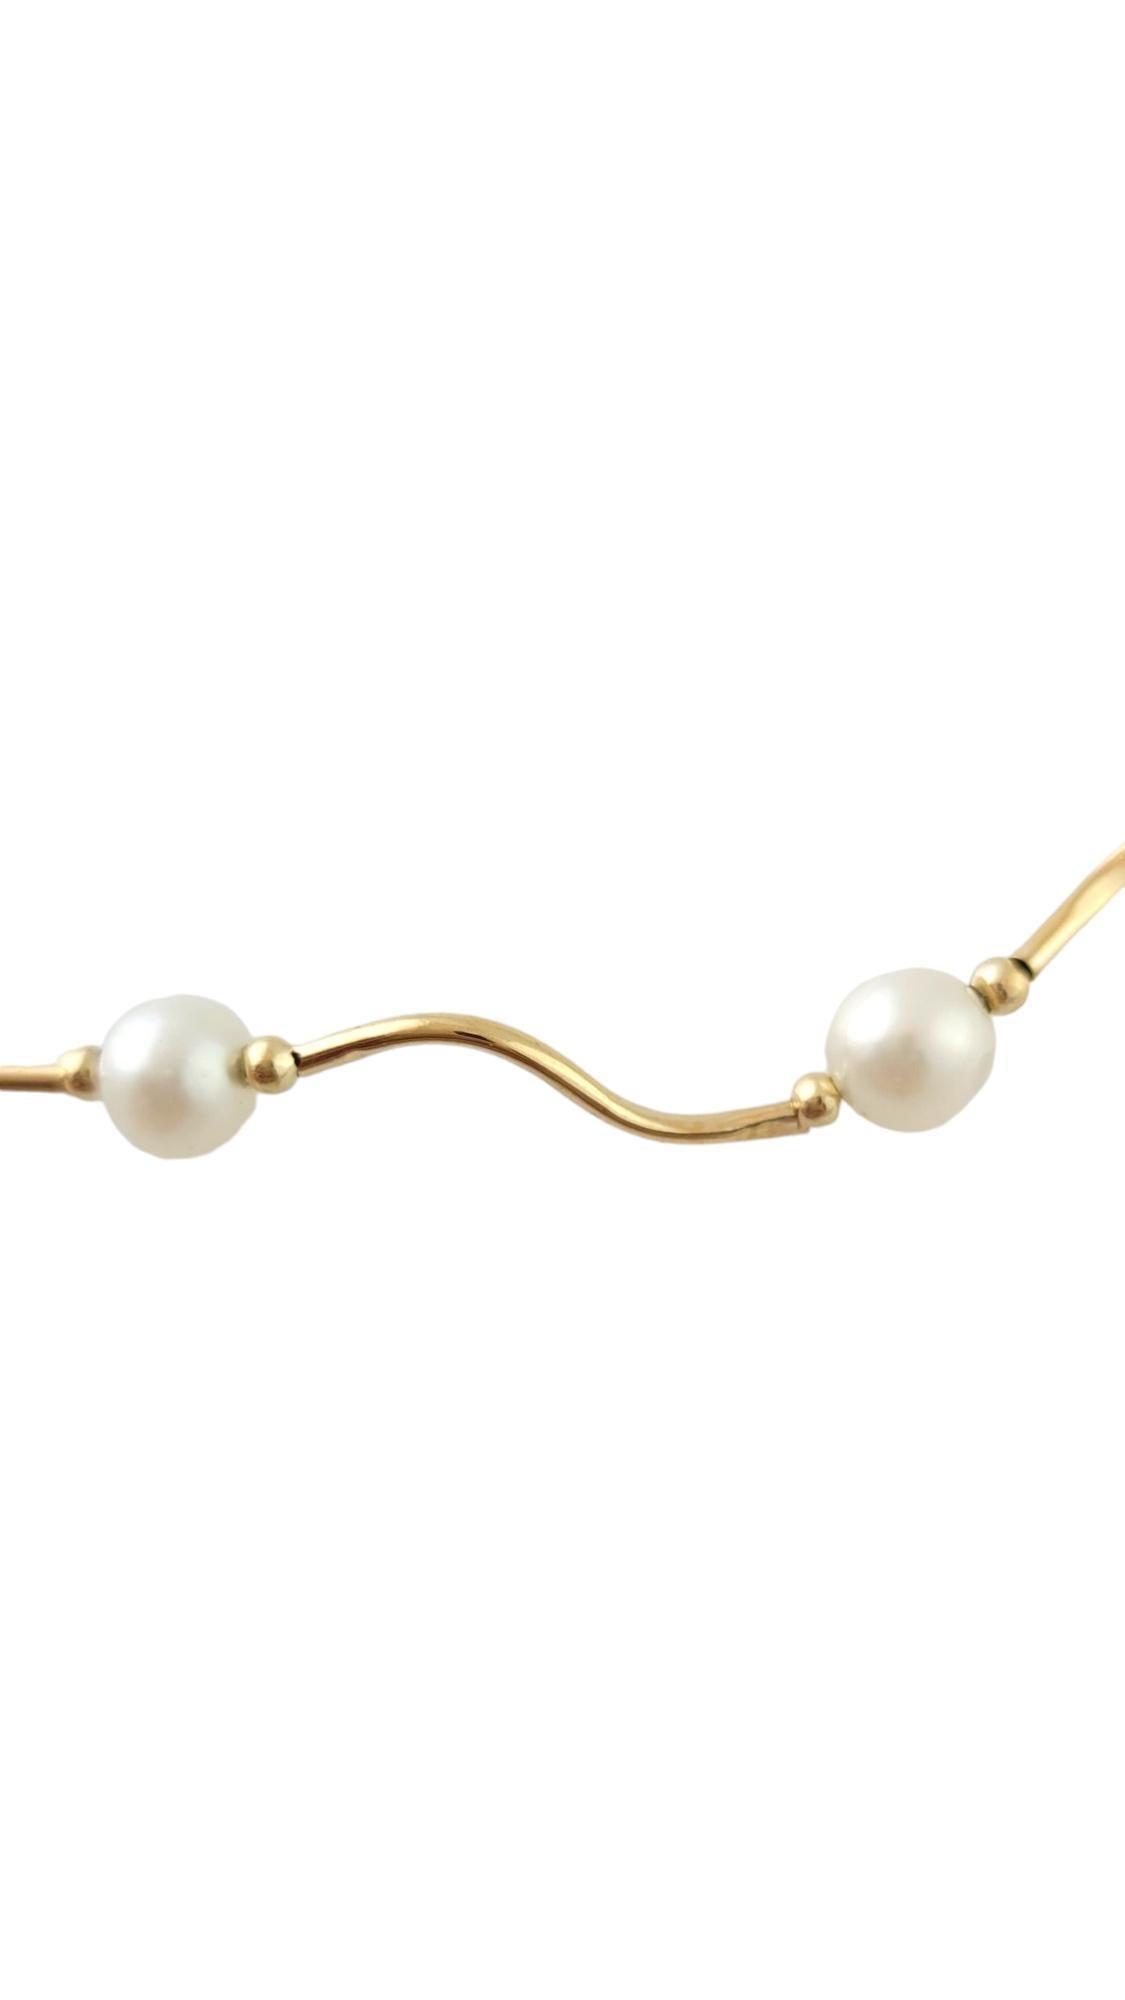 14K Gelbgold Perlenkette #17337

Diese wunderschöne Perlenkette ist aus 14K Gelbgold gefertigt und hat 16 wunderschöne Perlen!
(Jede Perle ca. 5,7 mm)

Länge: 15,5 mm

Gewicht: 3,53 dwt/ 5,48 g

Punze: 14K

Sehr guter Zustand, professionell